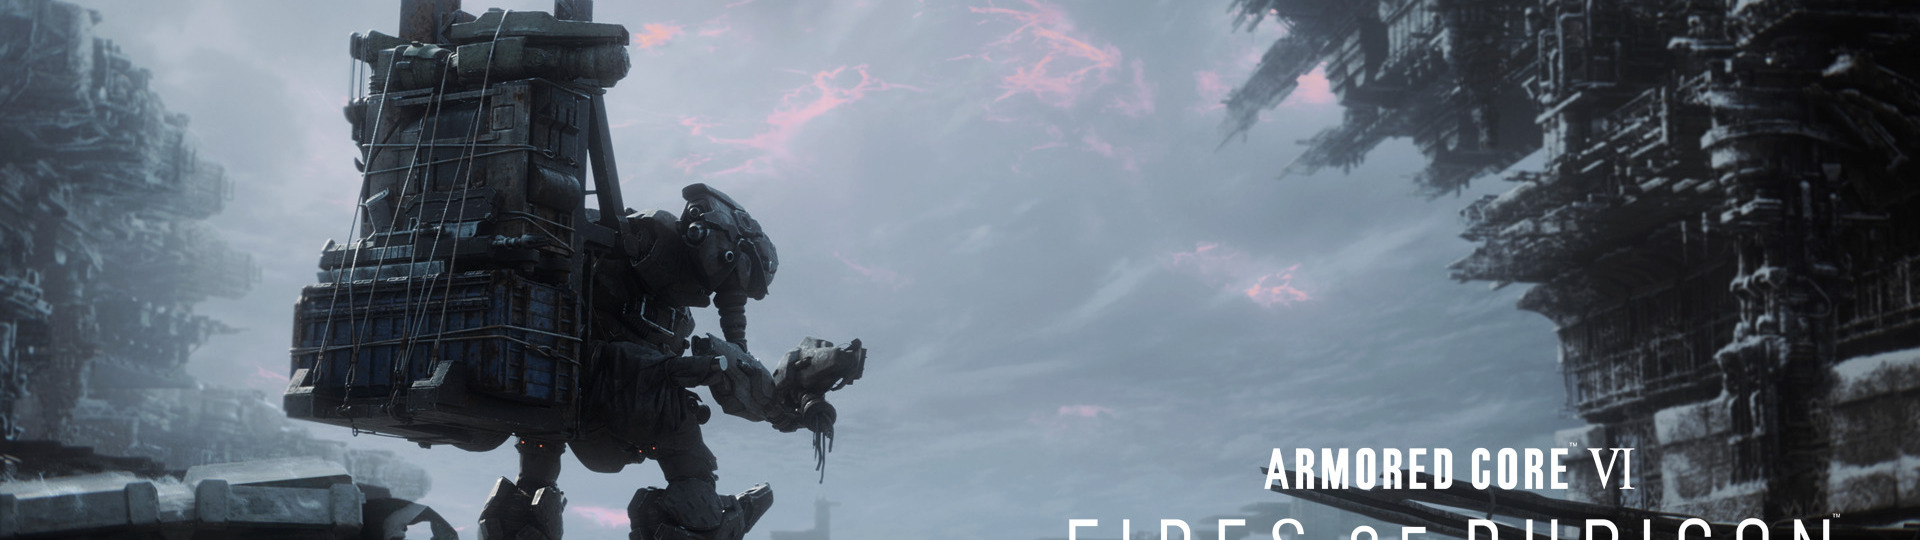 Tvůrci Elden Ring příští rok vydají Armored Core IV | Novinky